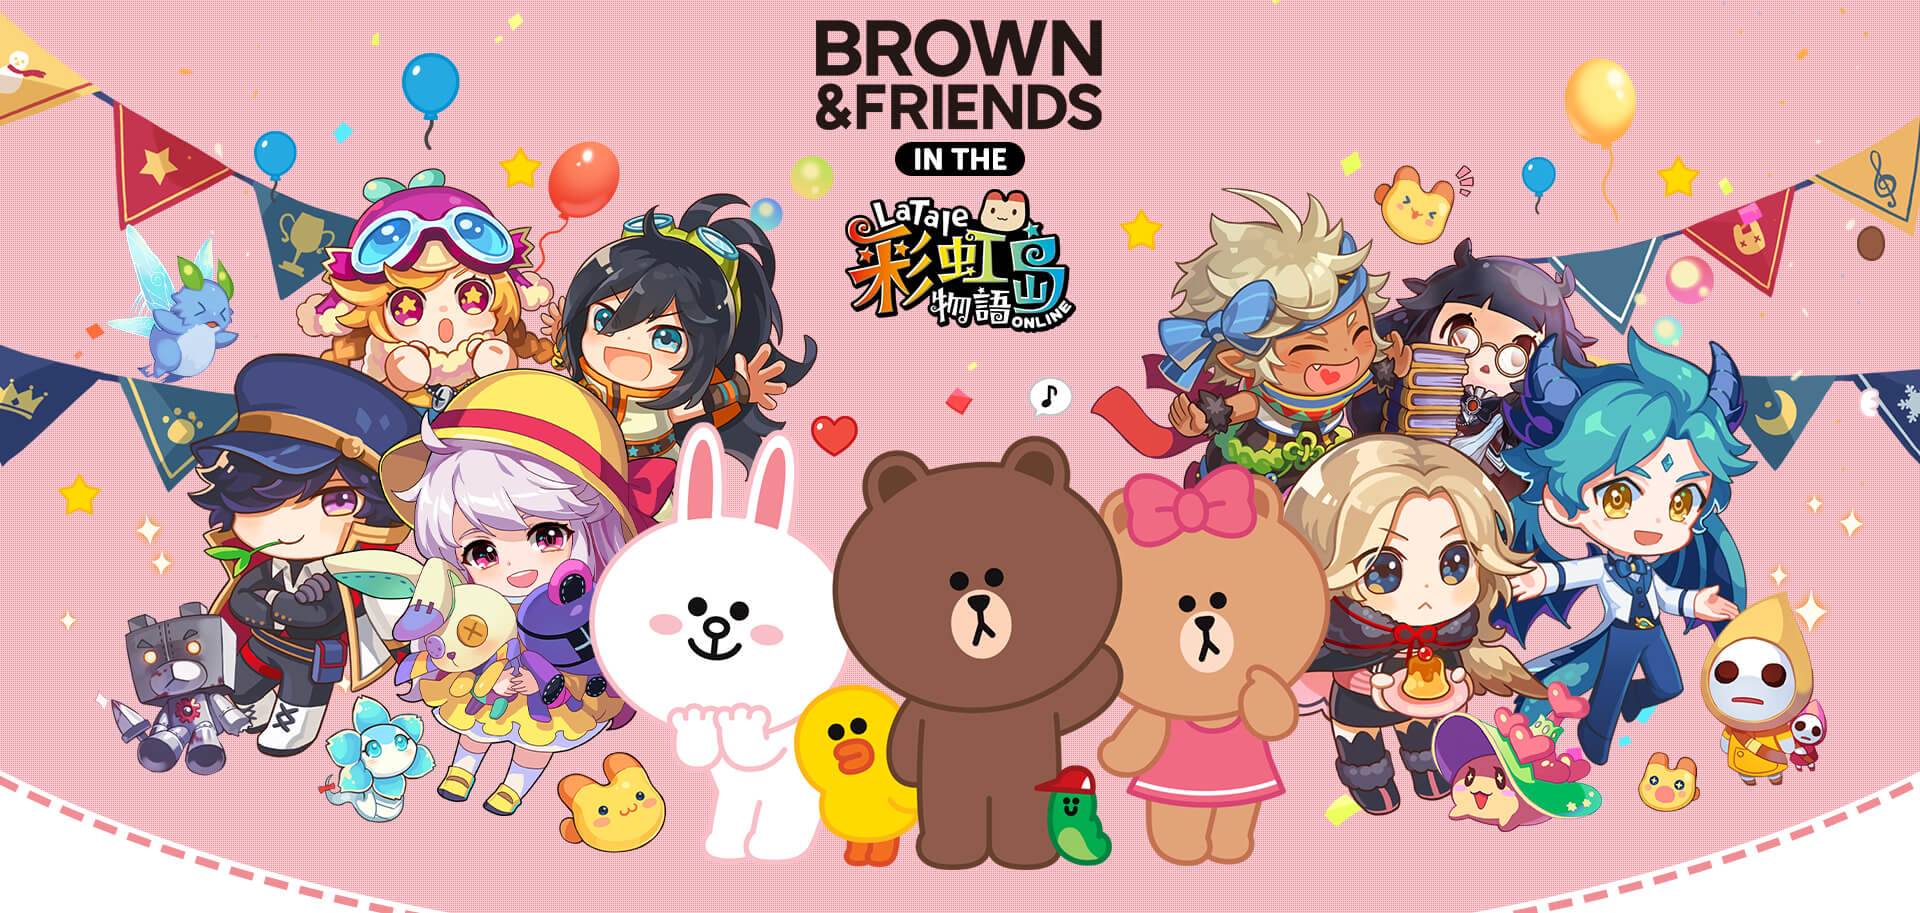 可愛聯萌！《彩虹島物語Online》宣布與 LINE FRIENDS 人氣角色 BROWN & FRIENDS 聯名合作 將推出熊大、兔兔、莎莉等角色道具